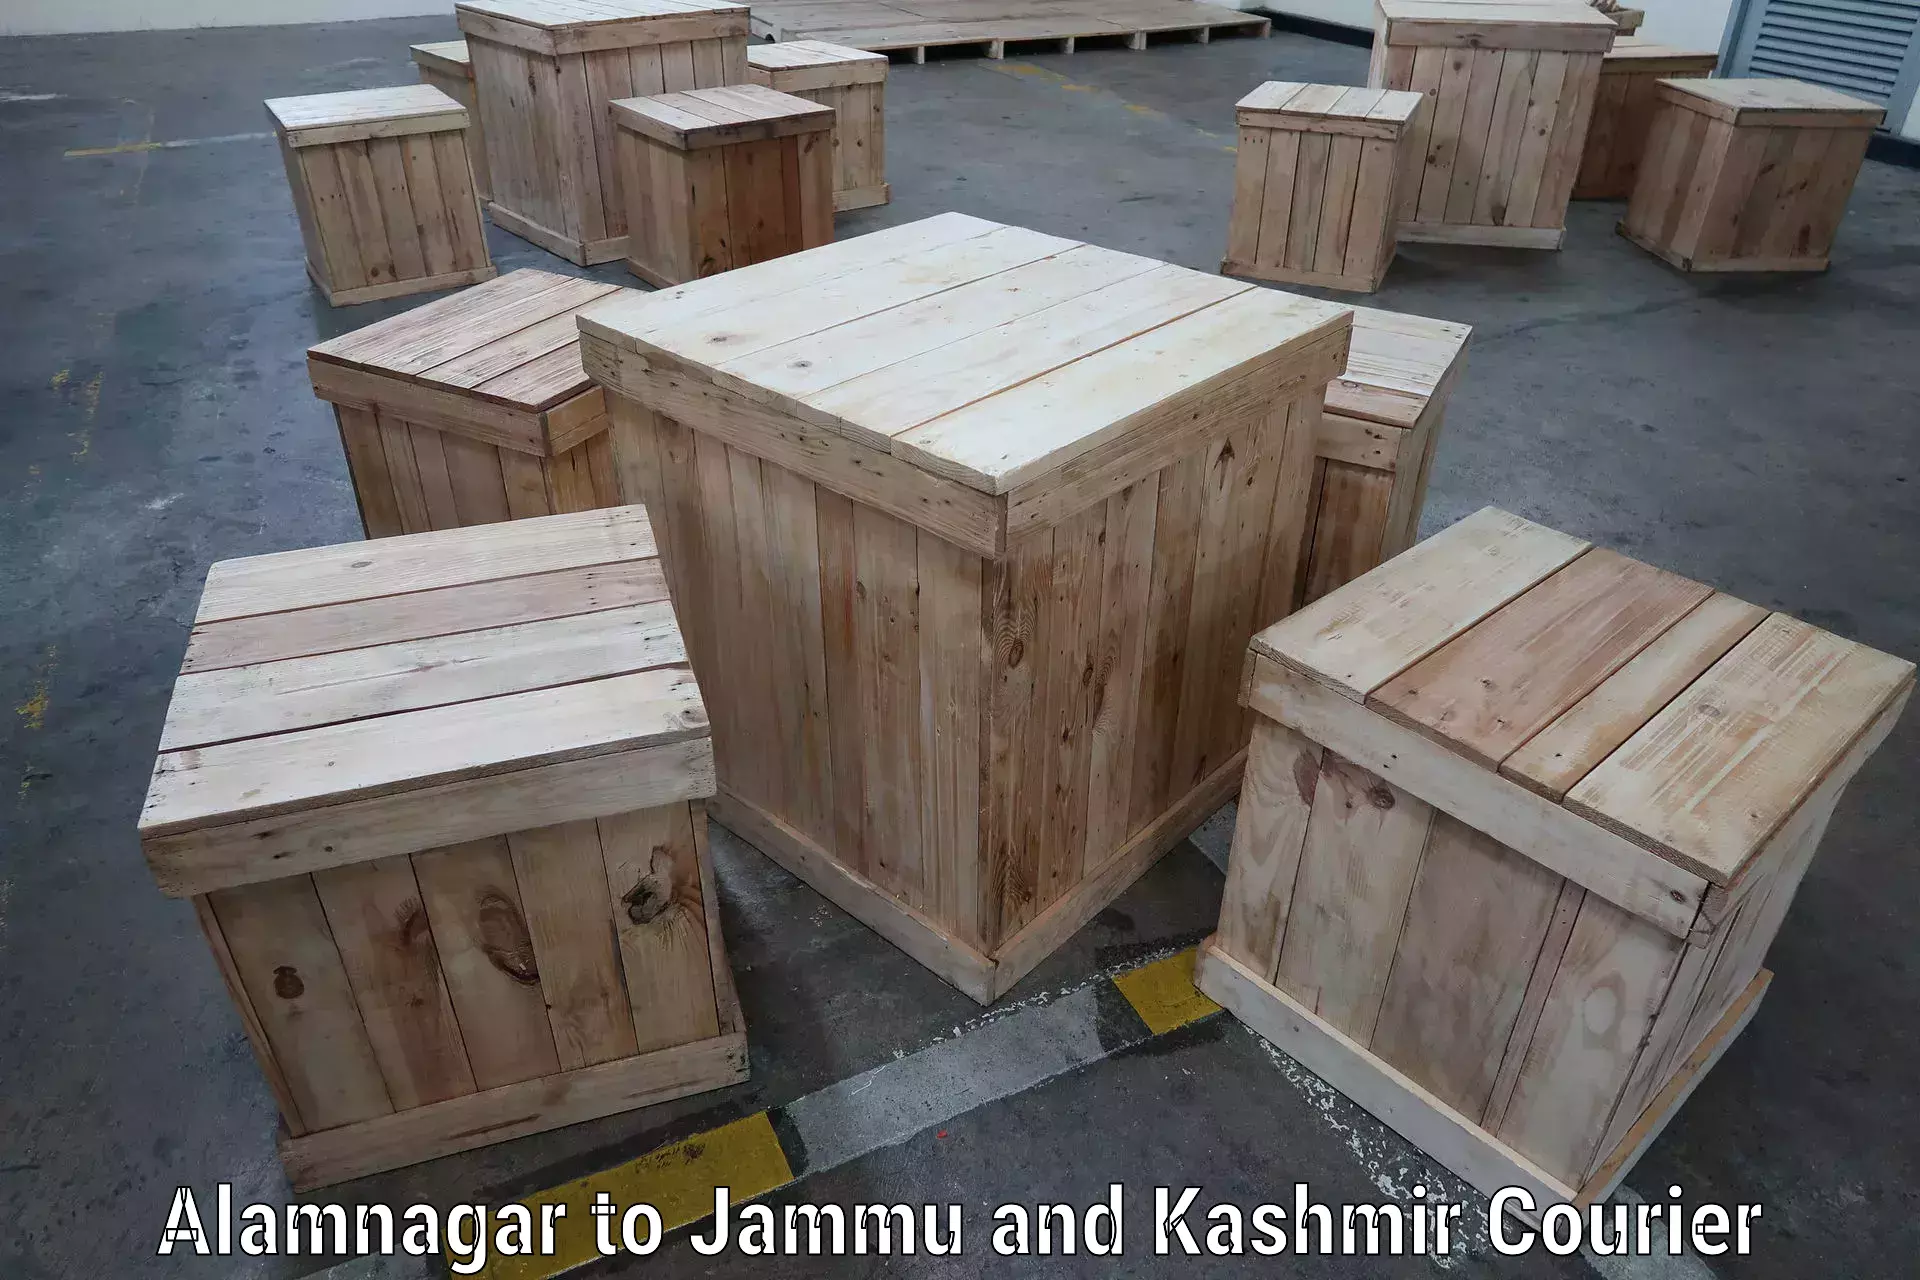 Efficient logistics management Alamnagar to Jammu and Kashmir